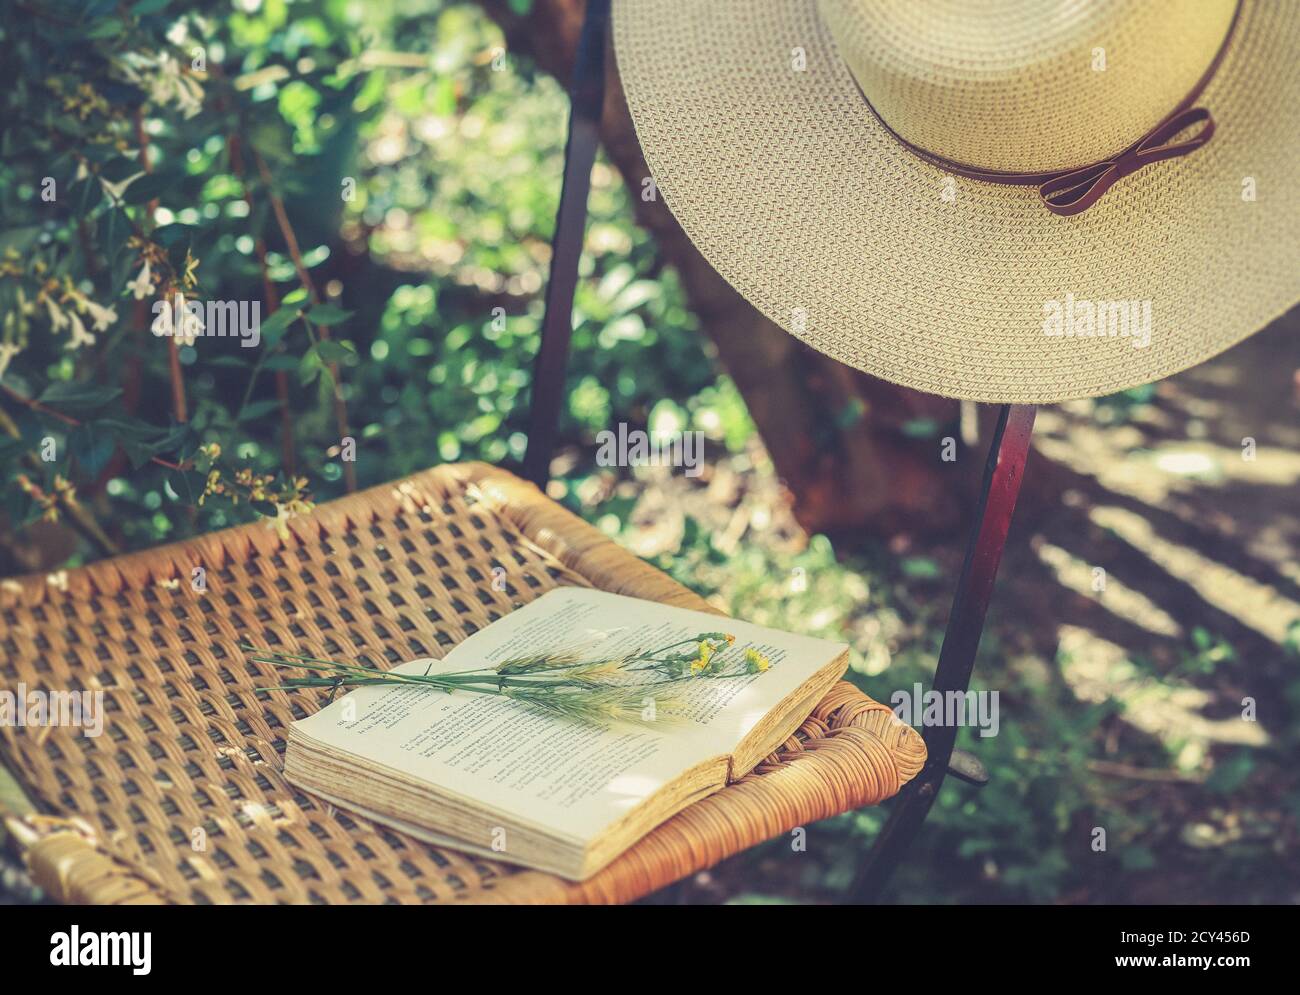 Fiori di campo su libro aperto e cappello estivo femminile su vecchia sedia in vimini in giardino, filtre retrò, concetto estetico nucleo cottage Foto Stock